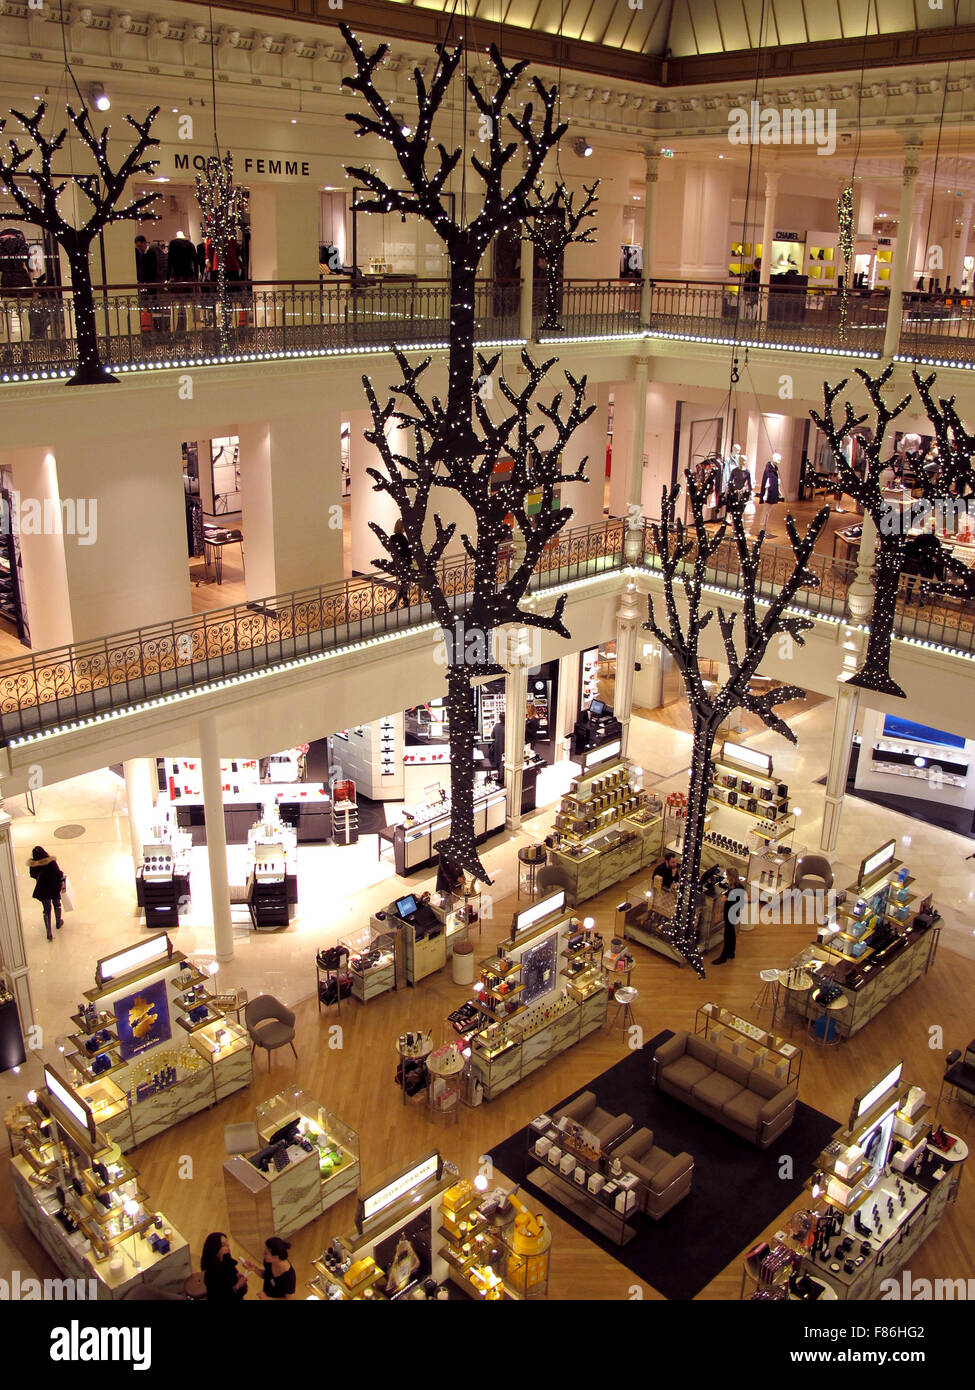 Le Bon Marché, Paris' oldest department store